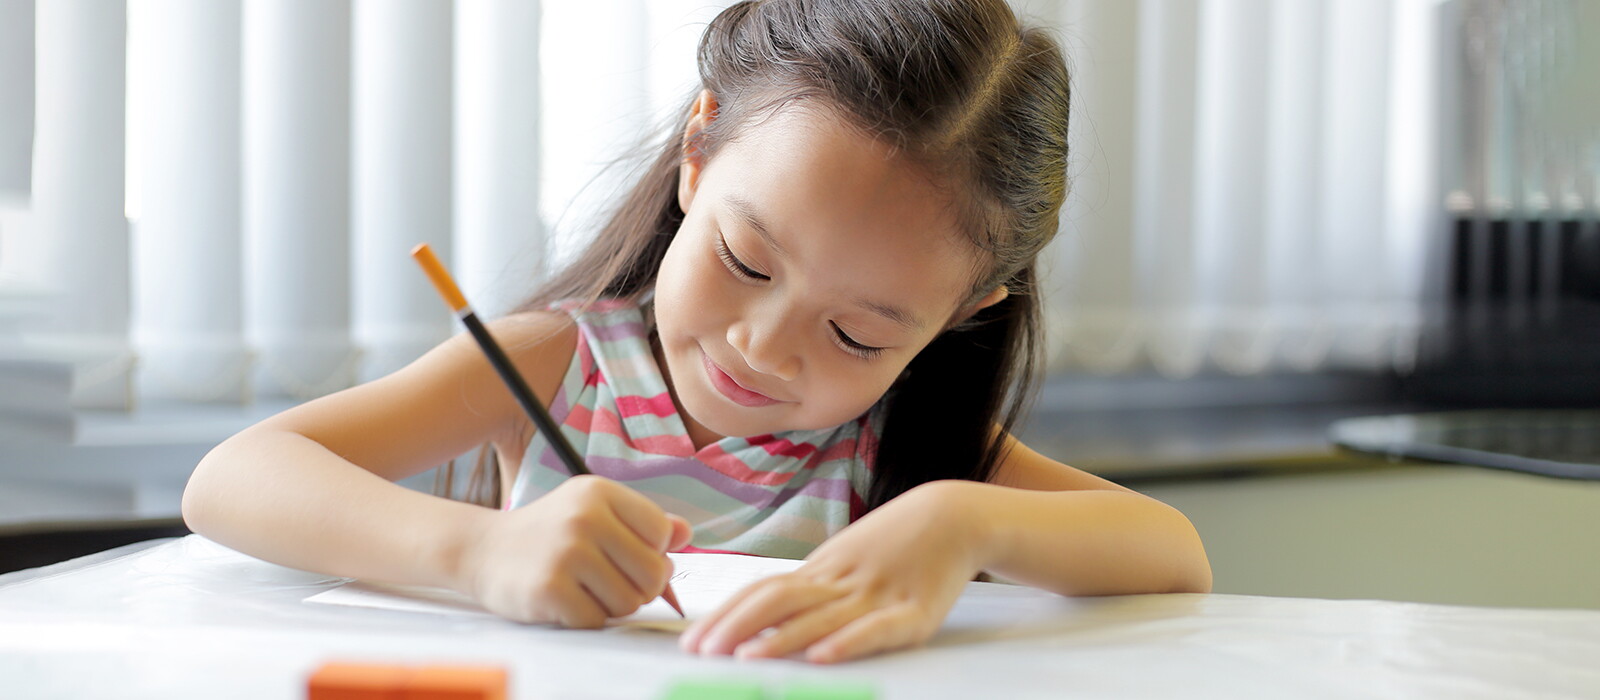 4 Tahapan Menulis Anak Usia Dini dan Cara Mengasahnya